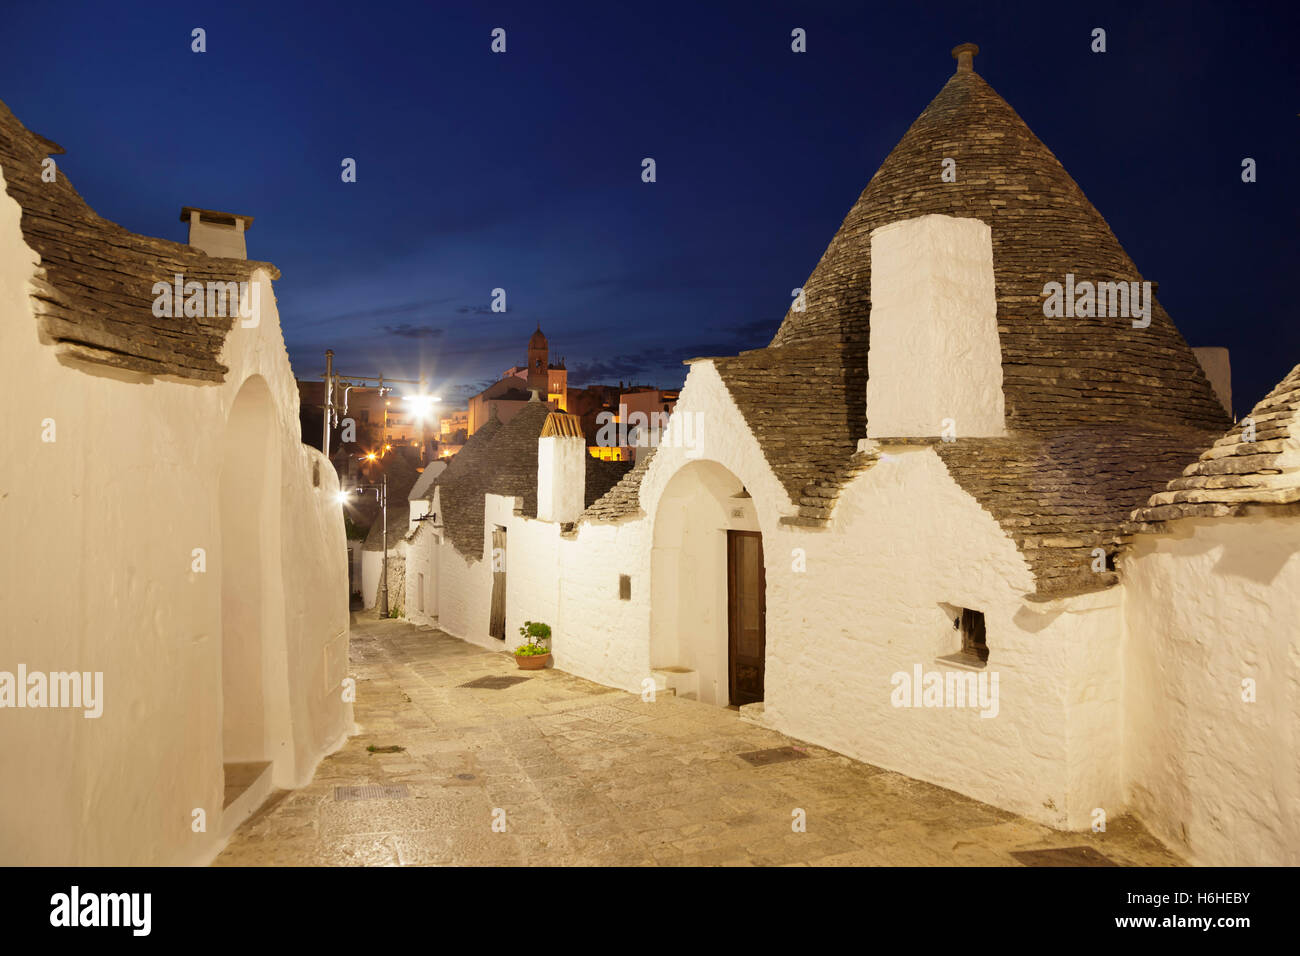 Callejón con Trulli casas, distrito de Monti, Alberobello, Escena nocturna, Valle d'Itria, Provincia de Bari, Puglia, Italia Foto de stock